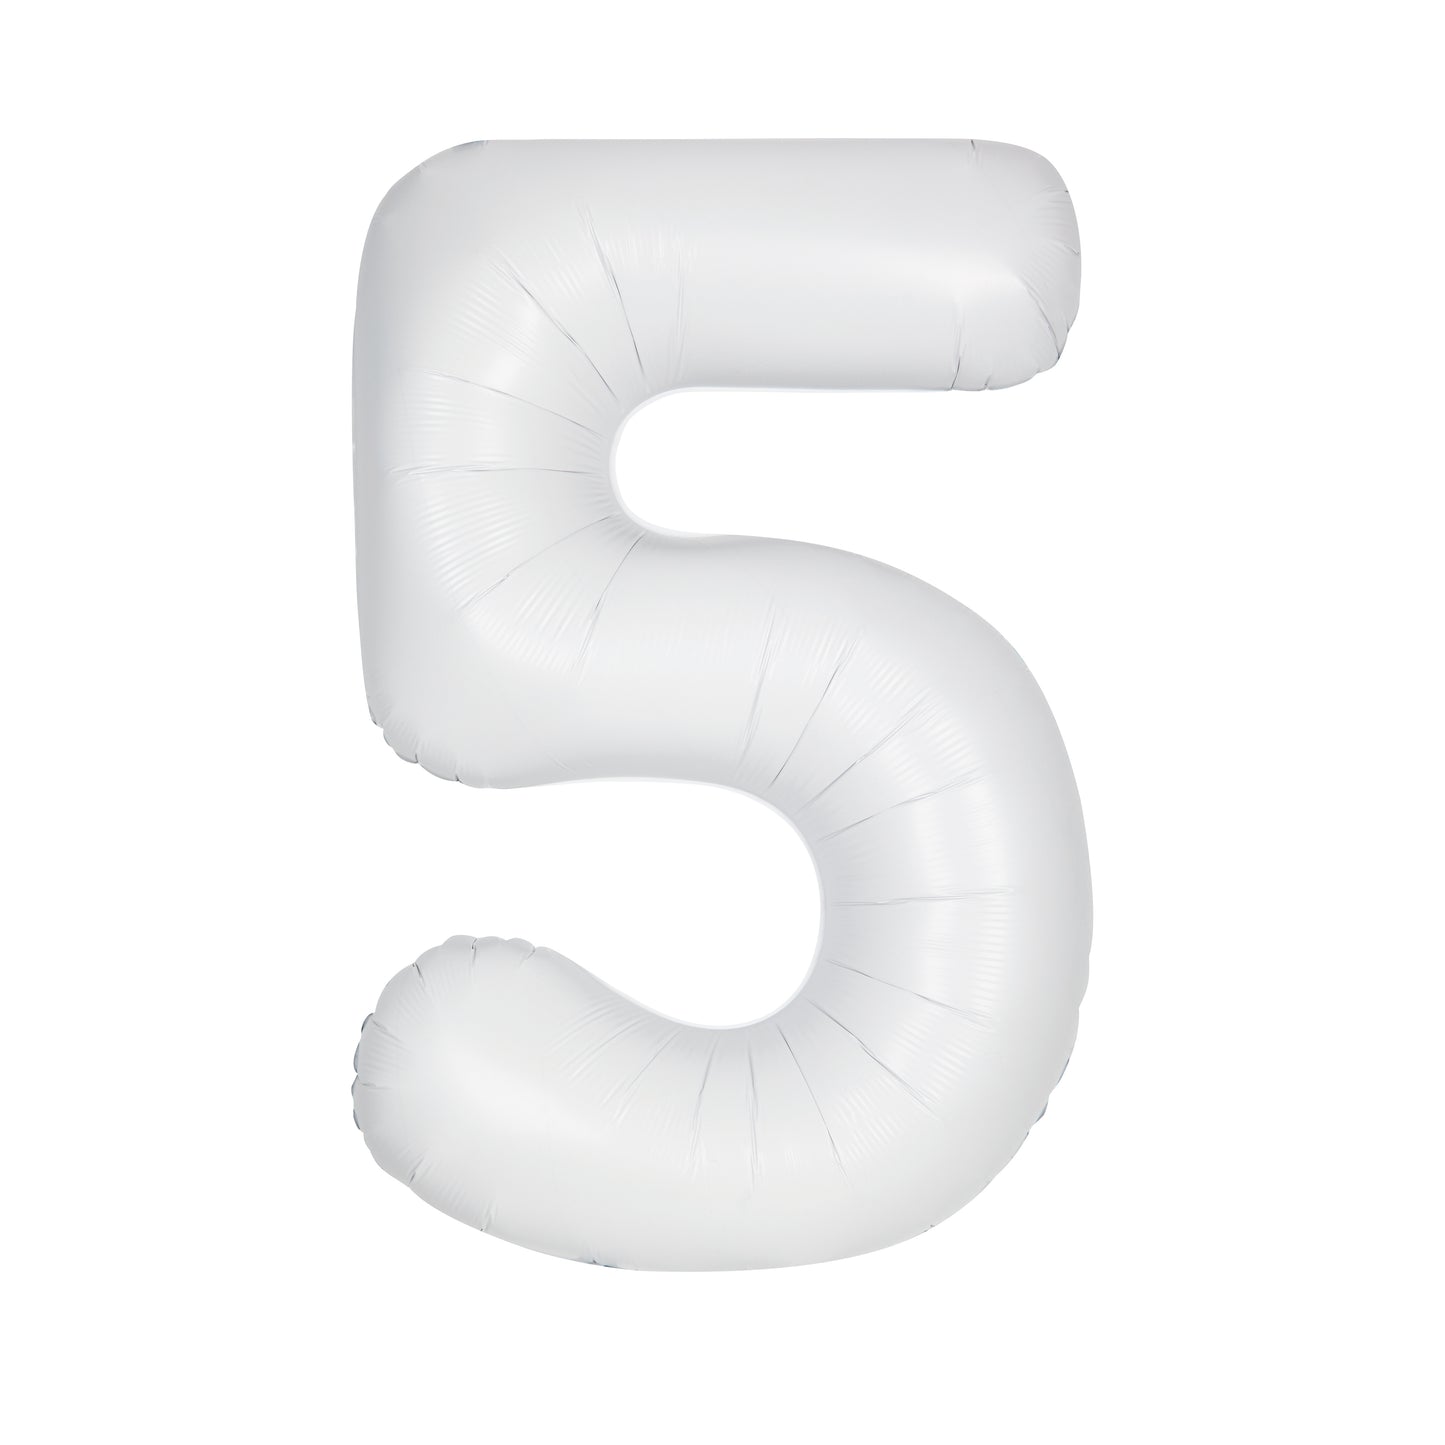 34" #5 Balloon (White)